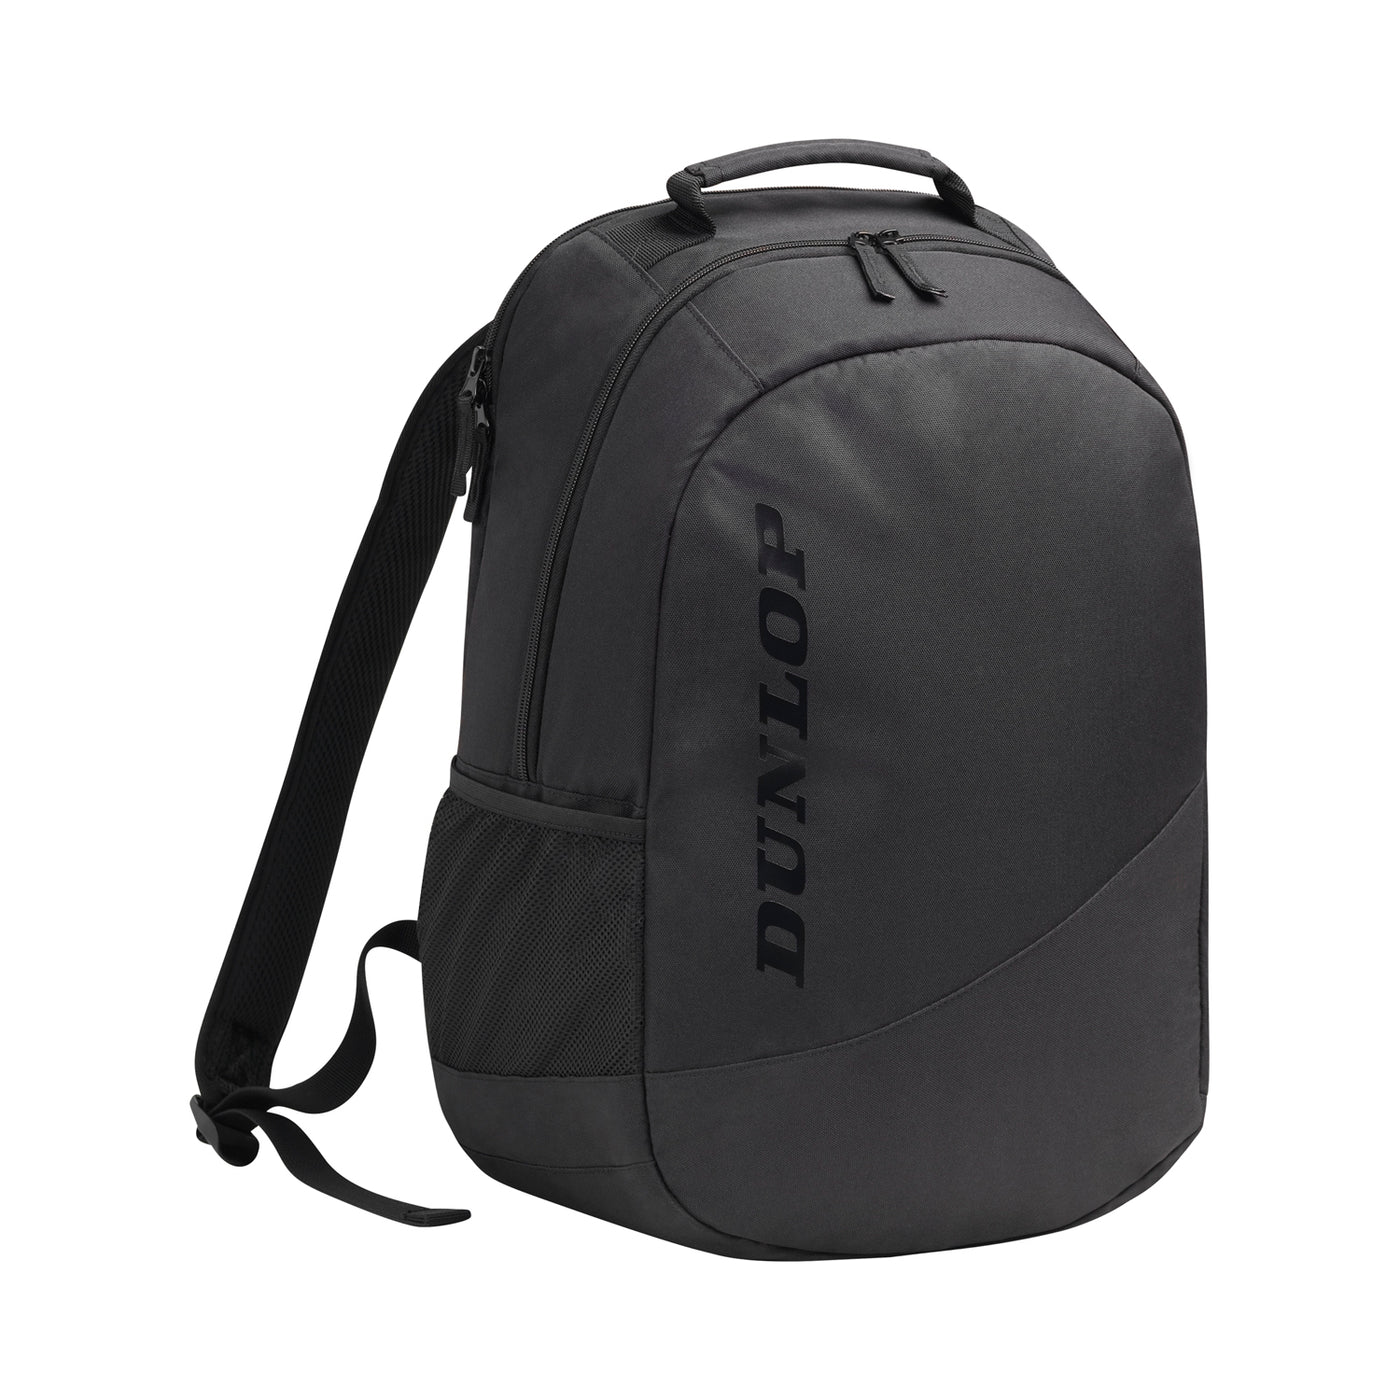 Dunlop CX Club Backpack - Black/Black